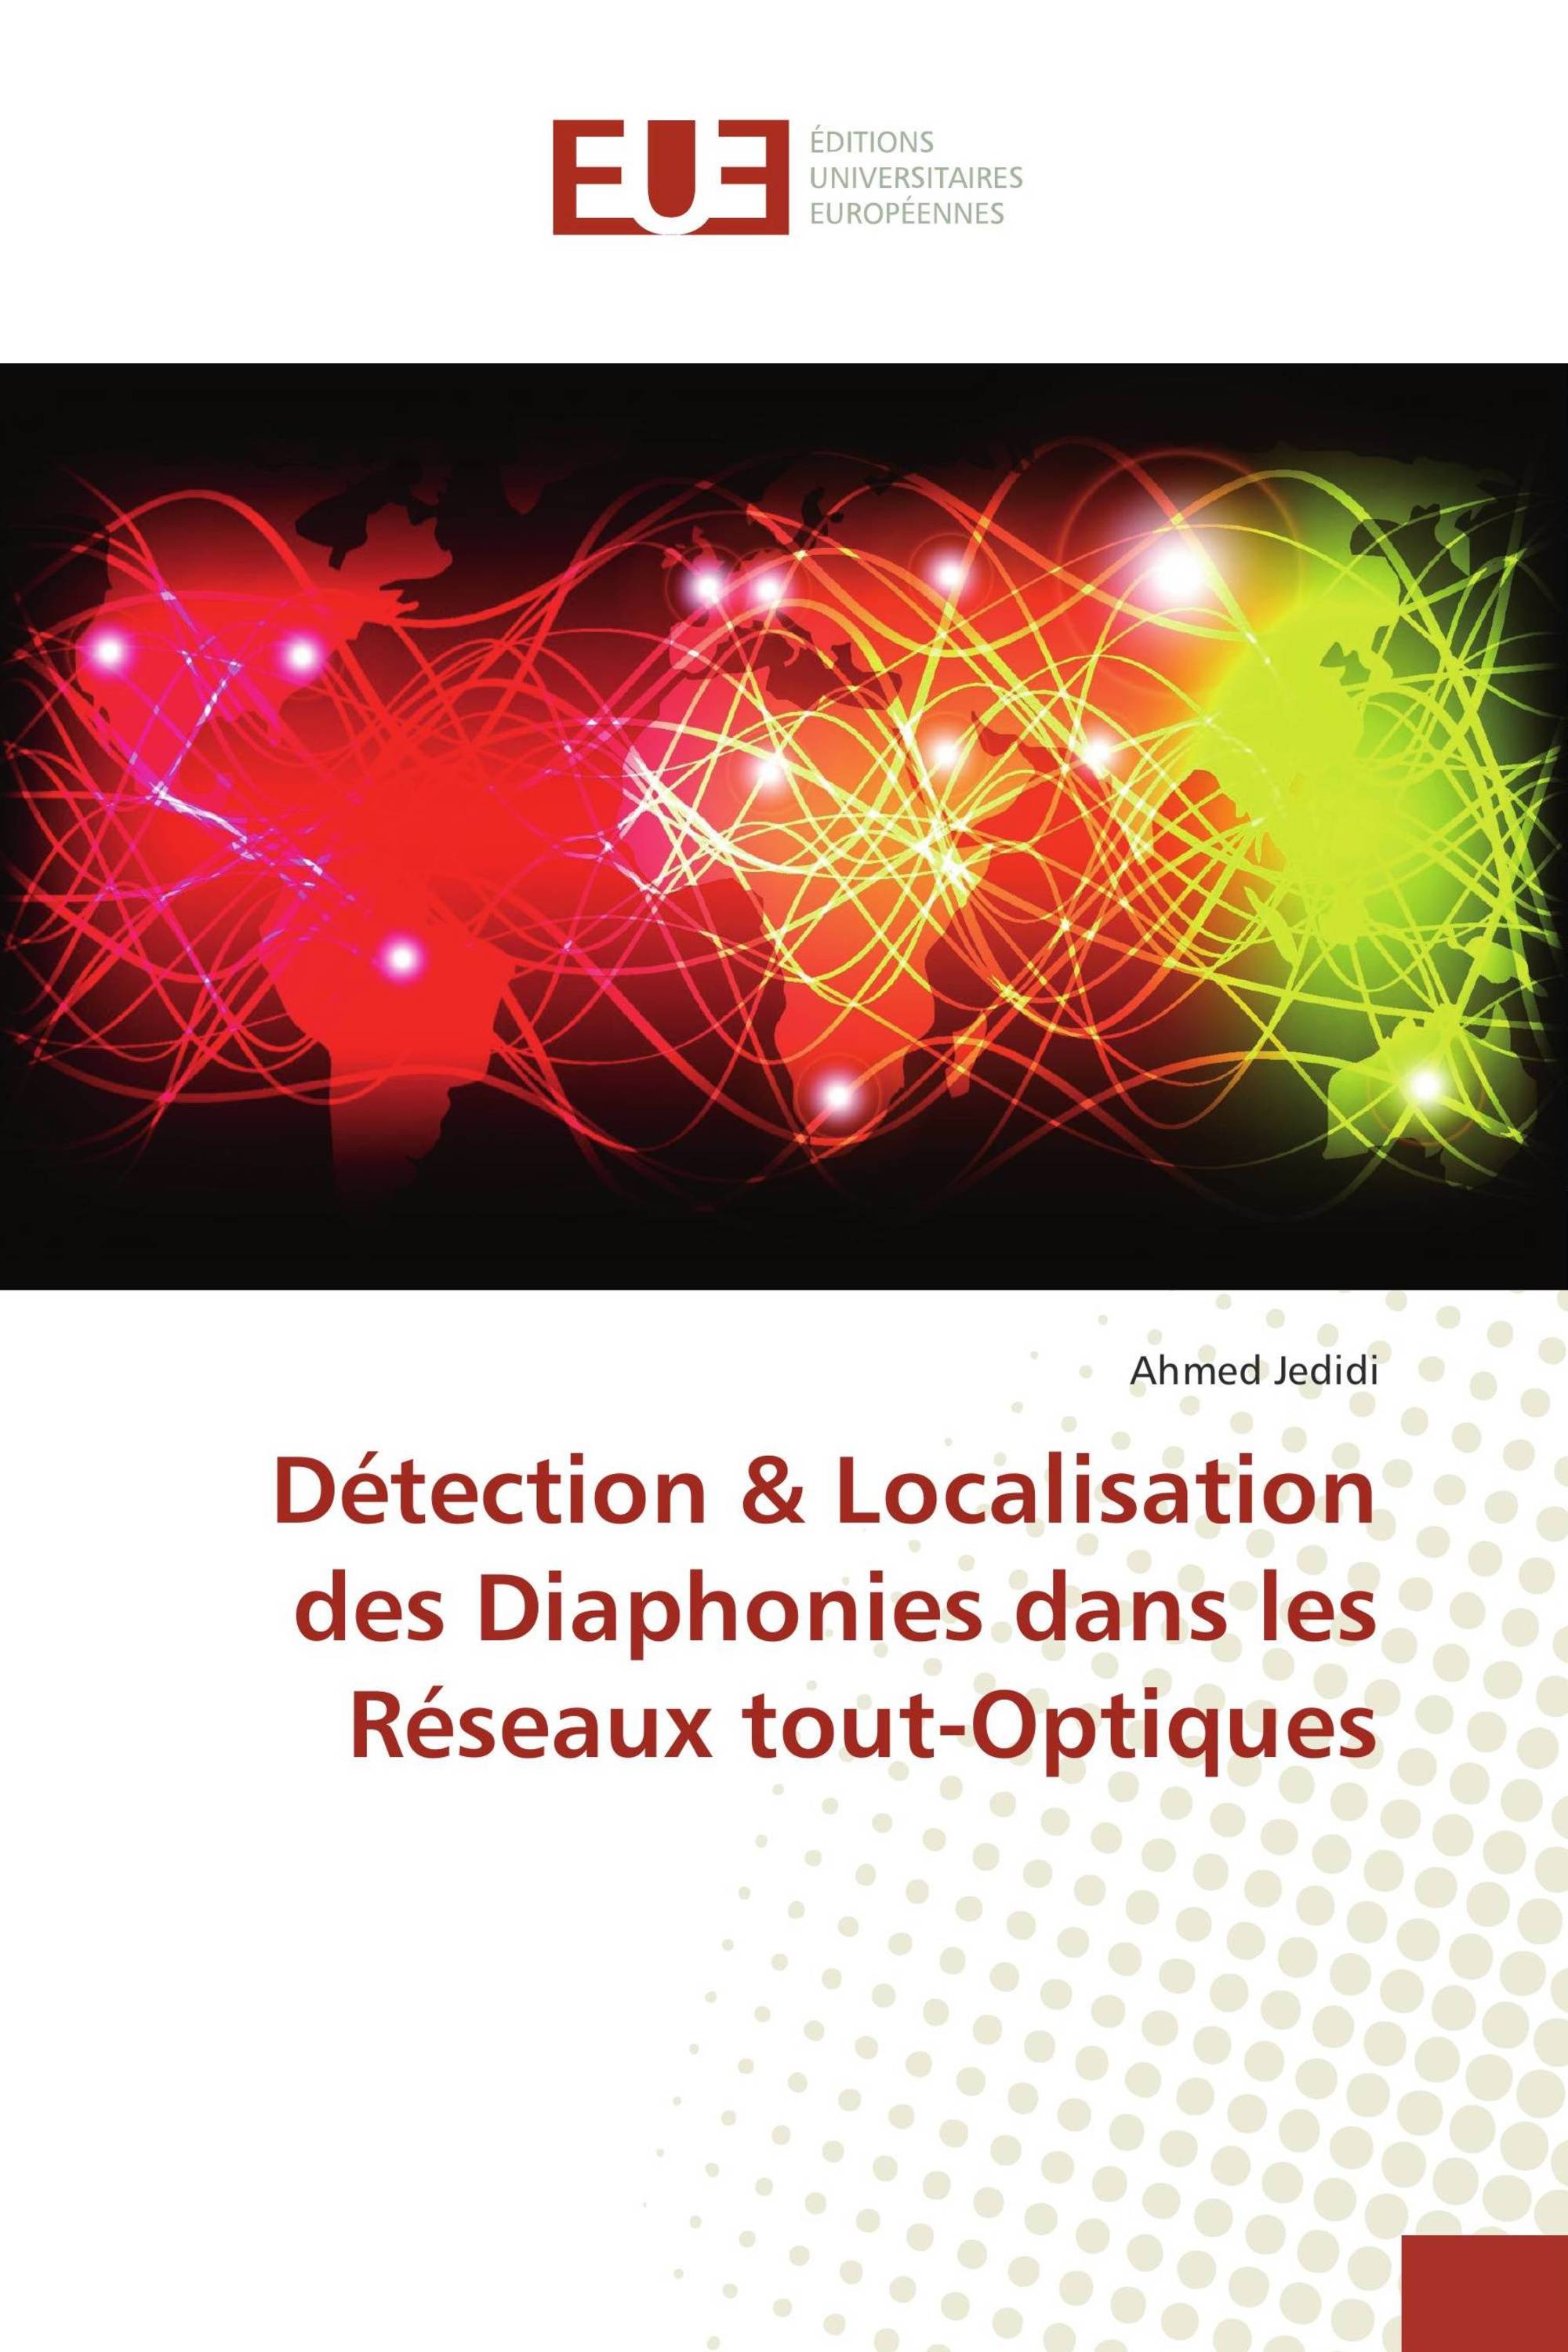 Détection & Localisation des Diaphonies dans les Réseaux tout-Optiques